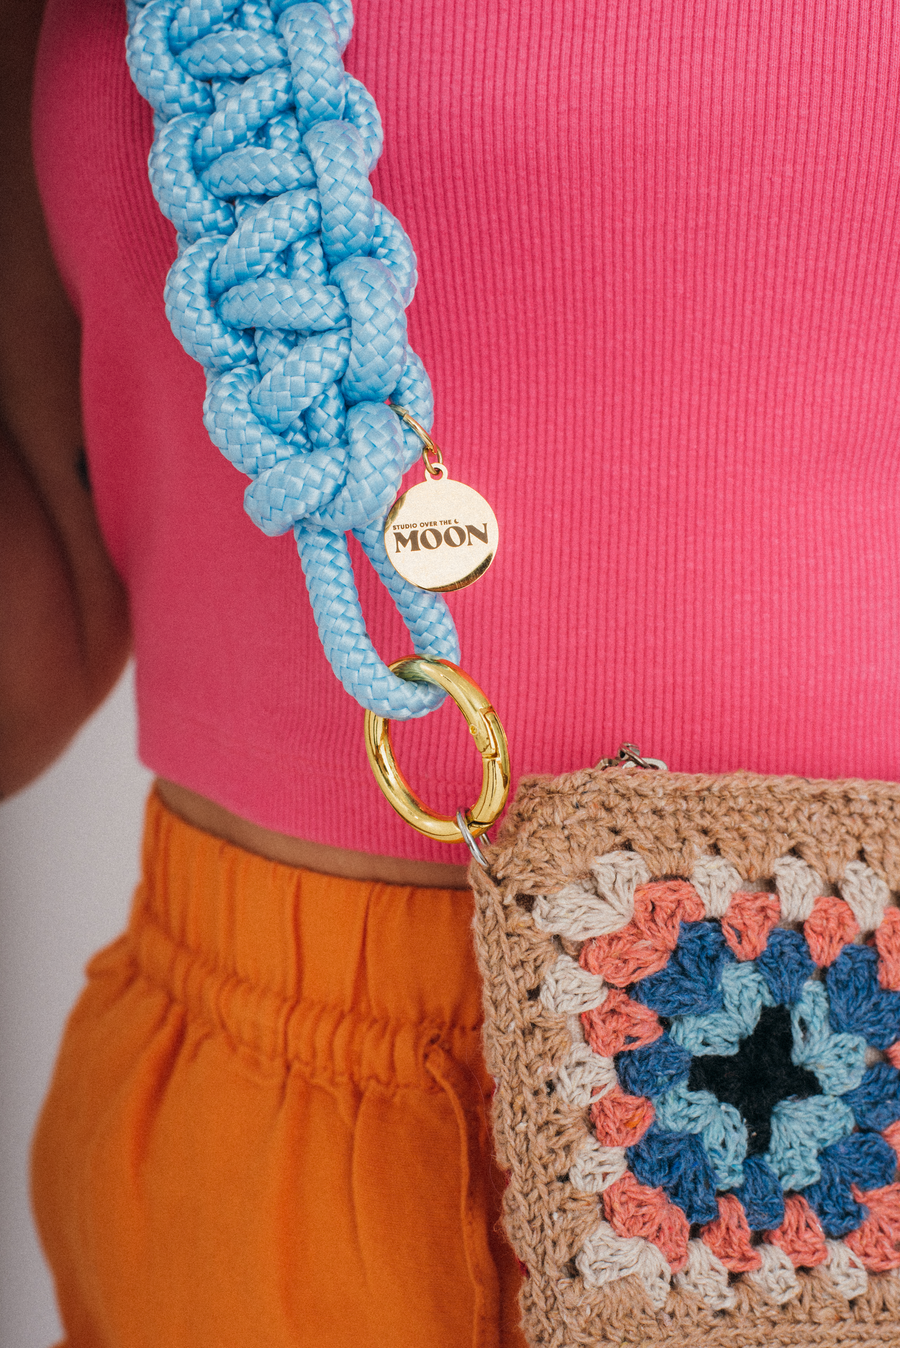 Crochet bag créme + paradise blue strap